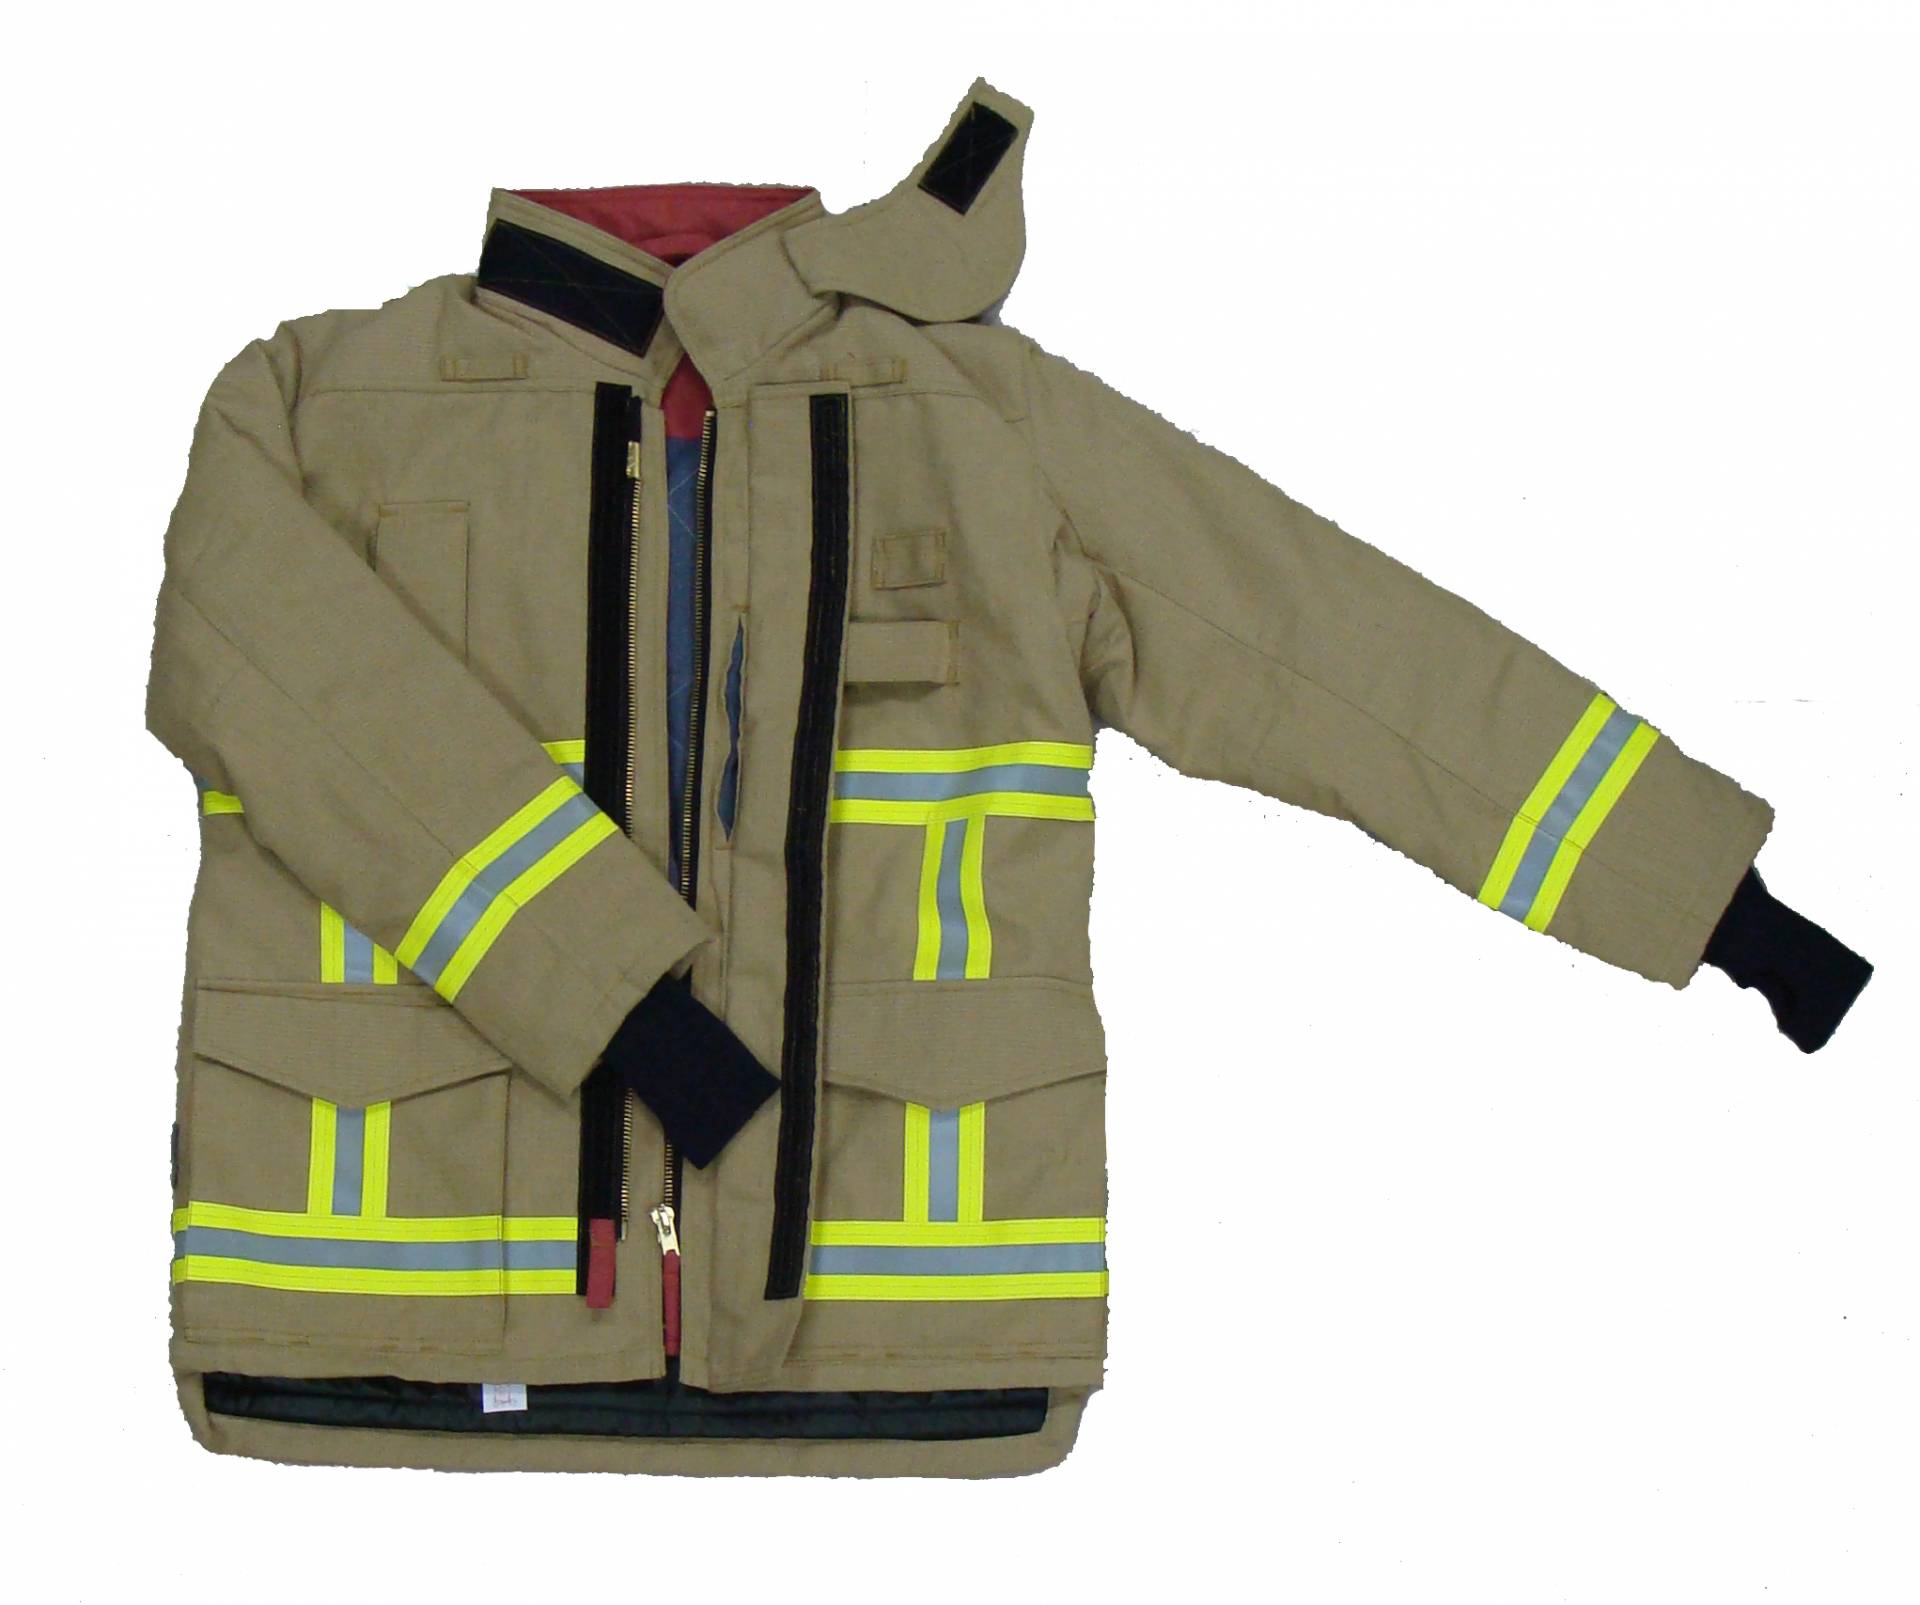 Combinaison de lutte contre l'incendie de style européen Premium 701-G, EN469 niveau 2, certificat CE, robuste pour protéger les pompiers